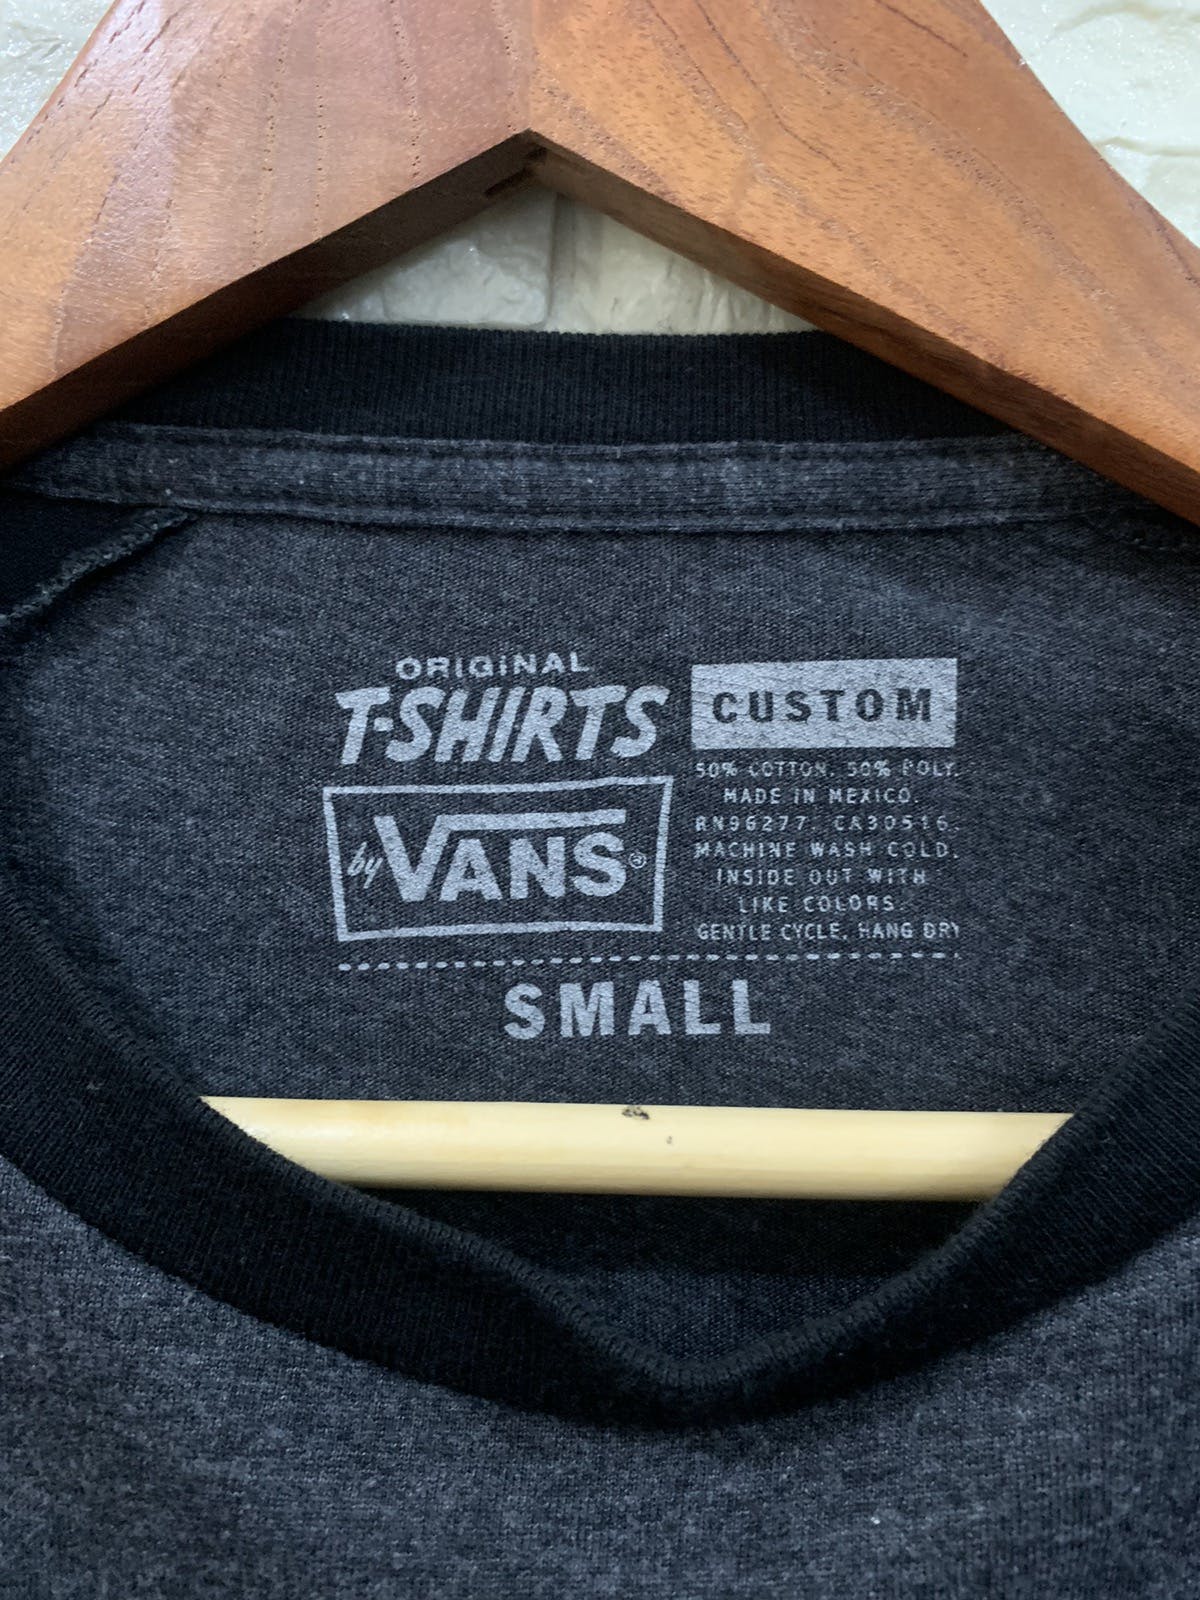 Vans “OFF THE WALL” Shirt - 4